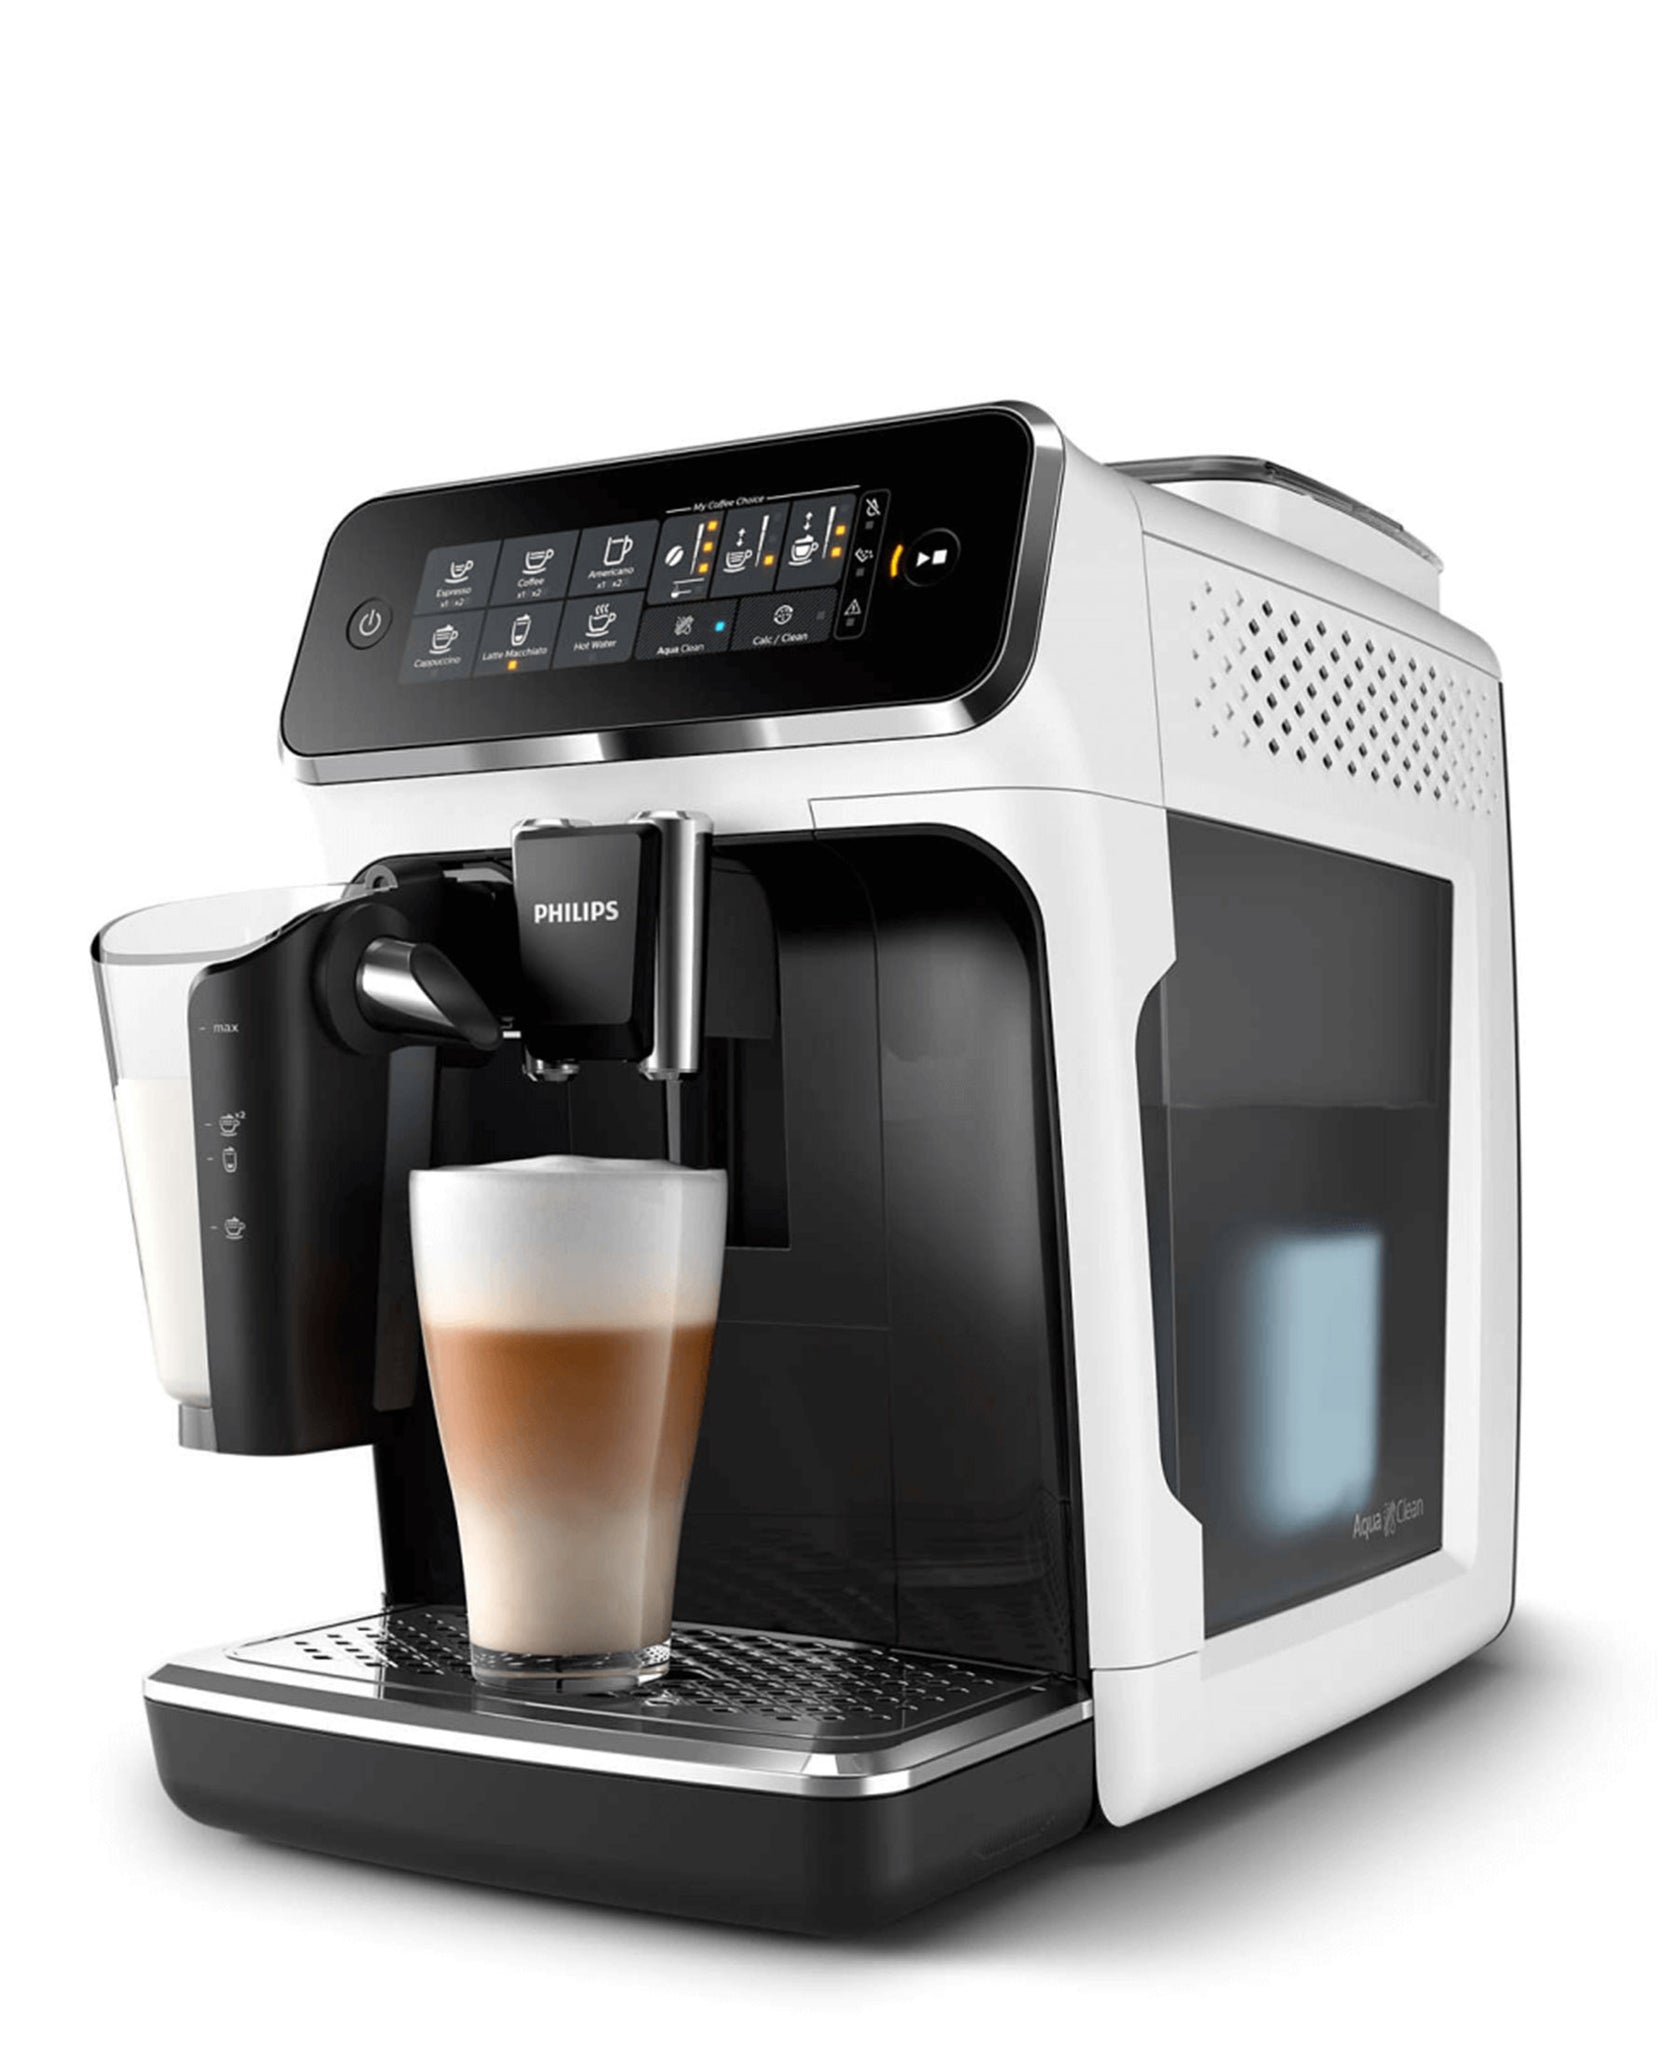 Philips 3200 Automatic Espresso Machine - Black & White